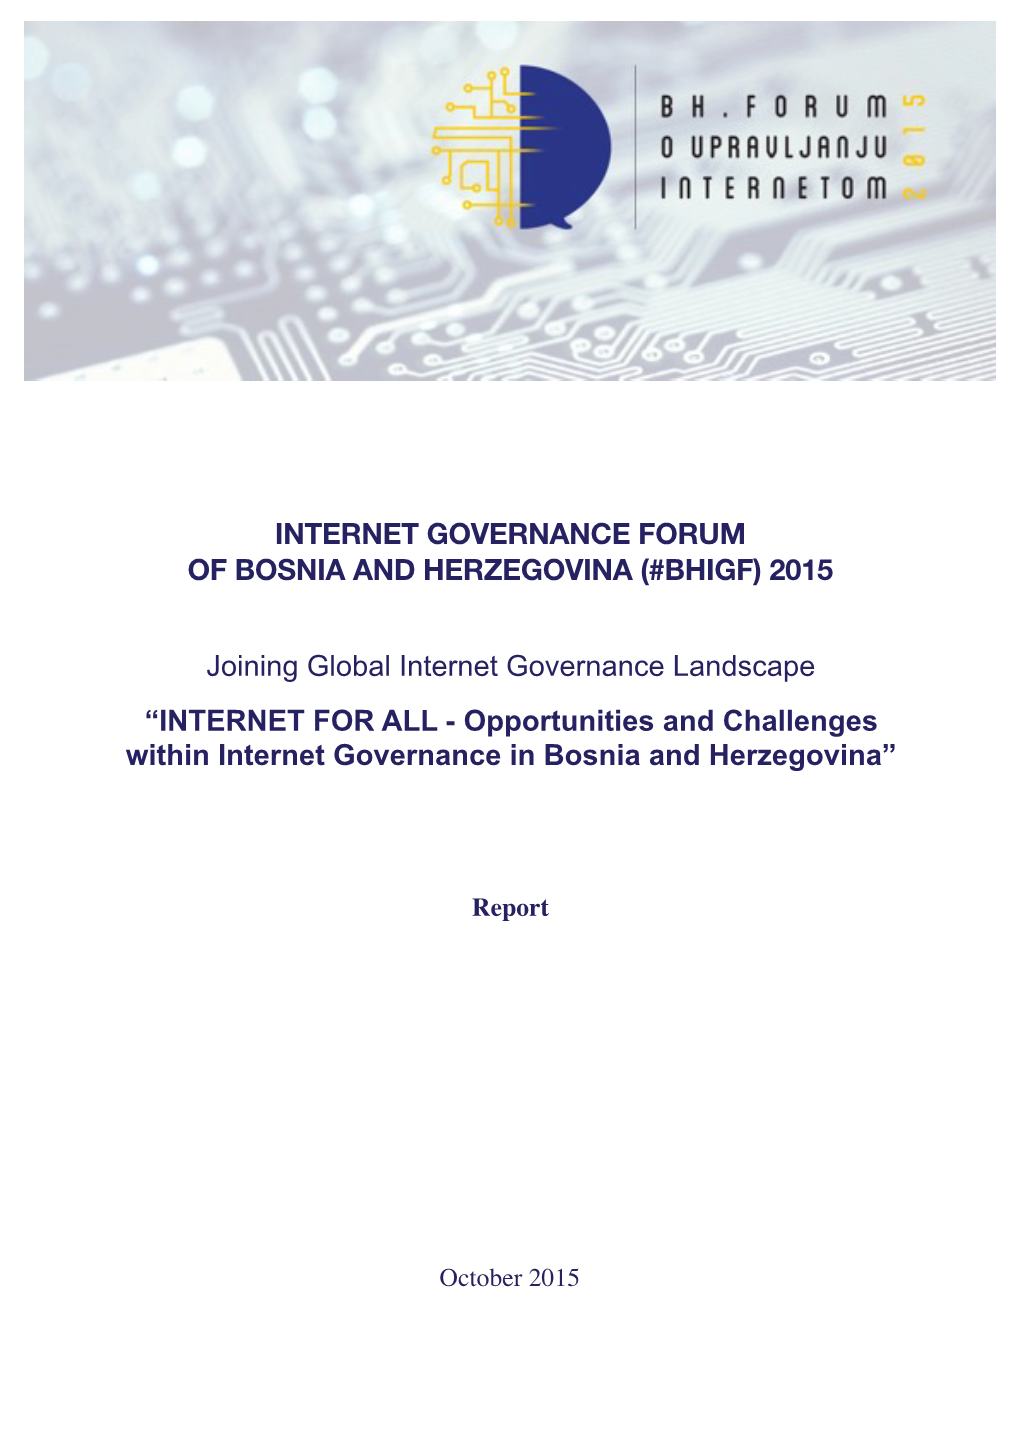 Internet Governance Forum of Bosnia and Herzegovina (#Bhigf) 2015